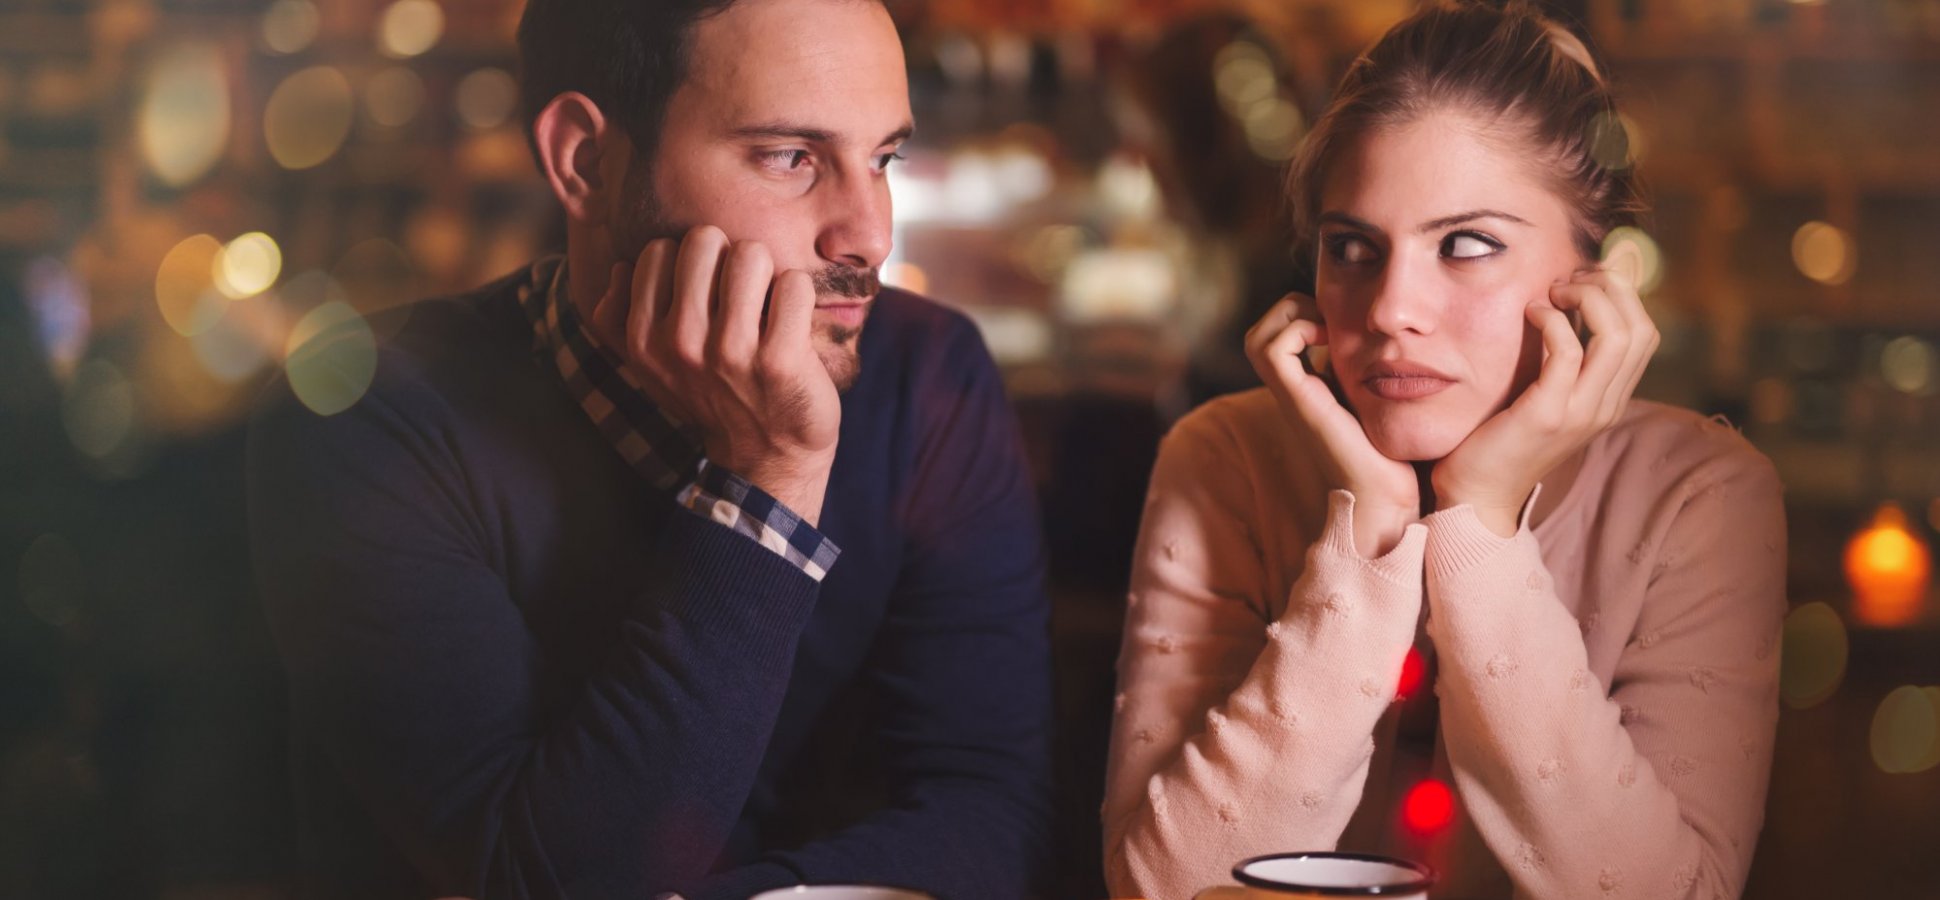 21 რამ, რაც მამაკაცს უკეთეს მეუღლედ აქცევს - წააკითხეთ ქმრებს